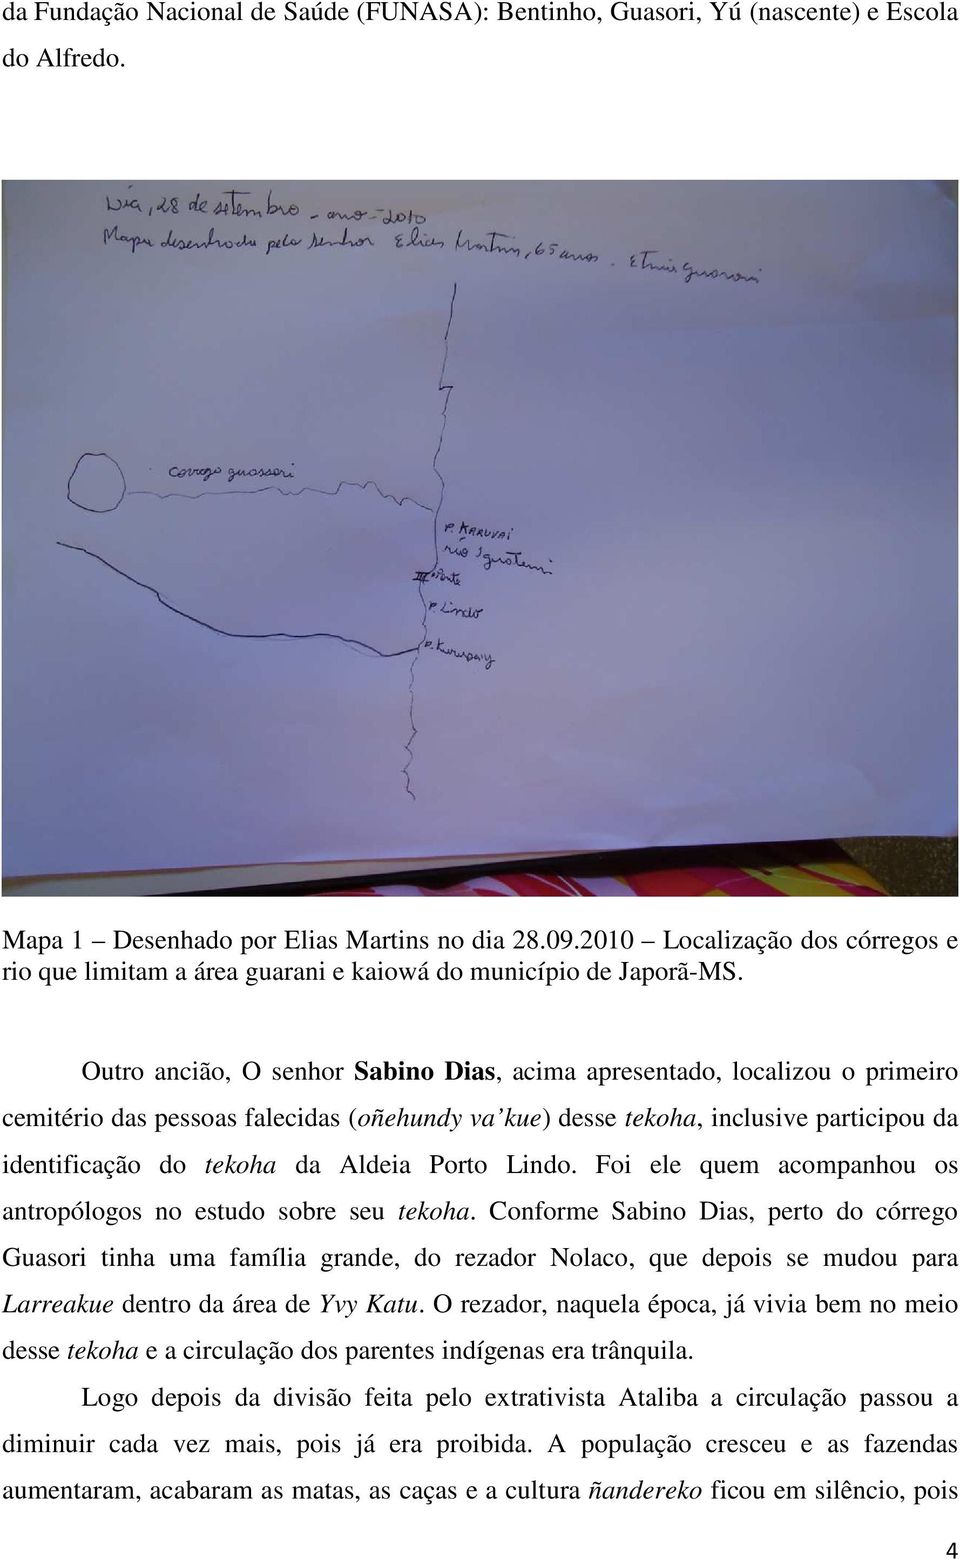 Outro ancião, O senhor Sabino Dias, acima apresentado, localizou o primeiro cemitério das pessoas falecidas (oñehundy va kue) desse tekoha, inclusive participou da identificação do tekoha da Aldeia